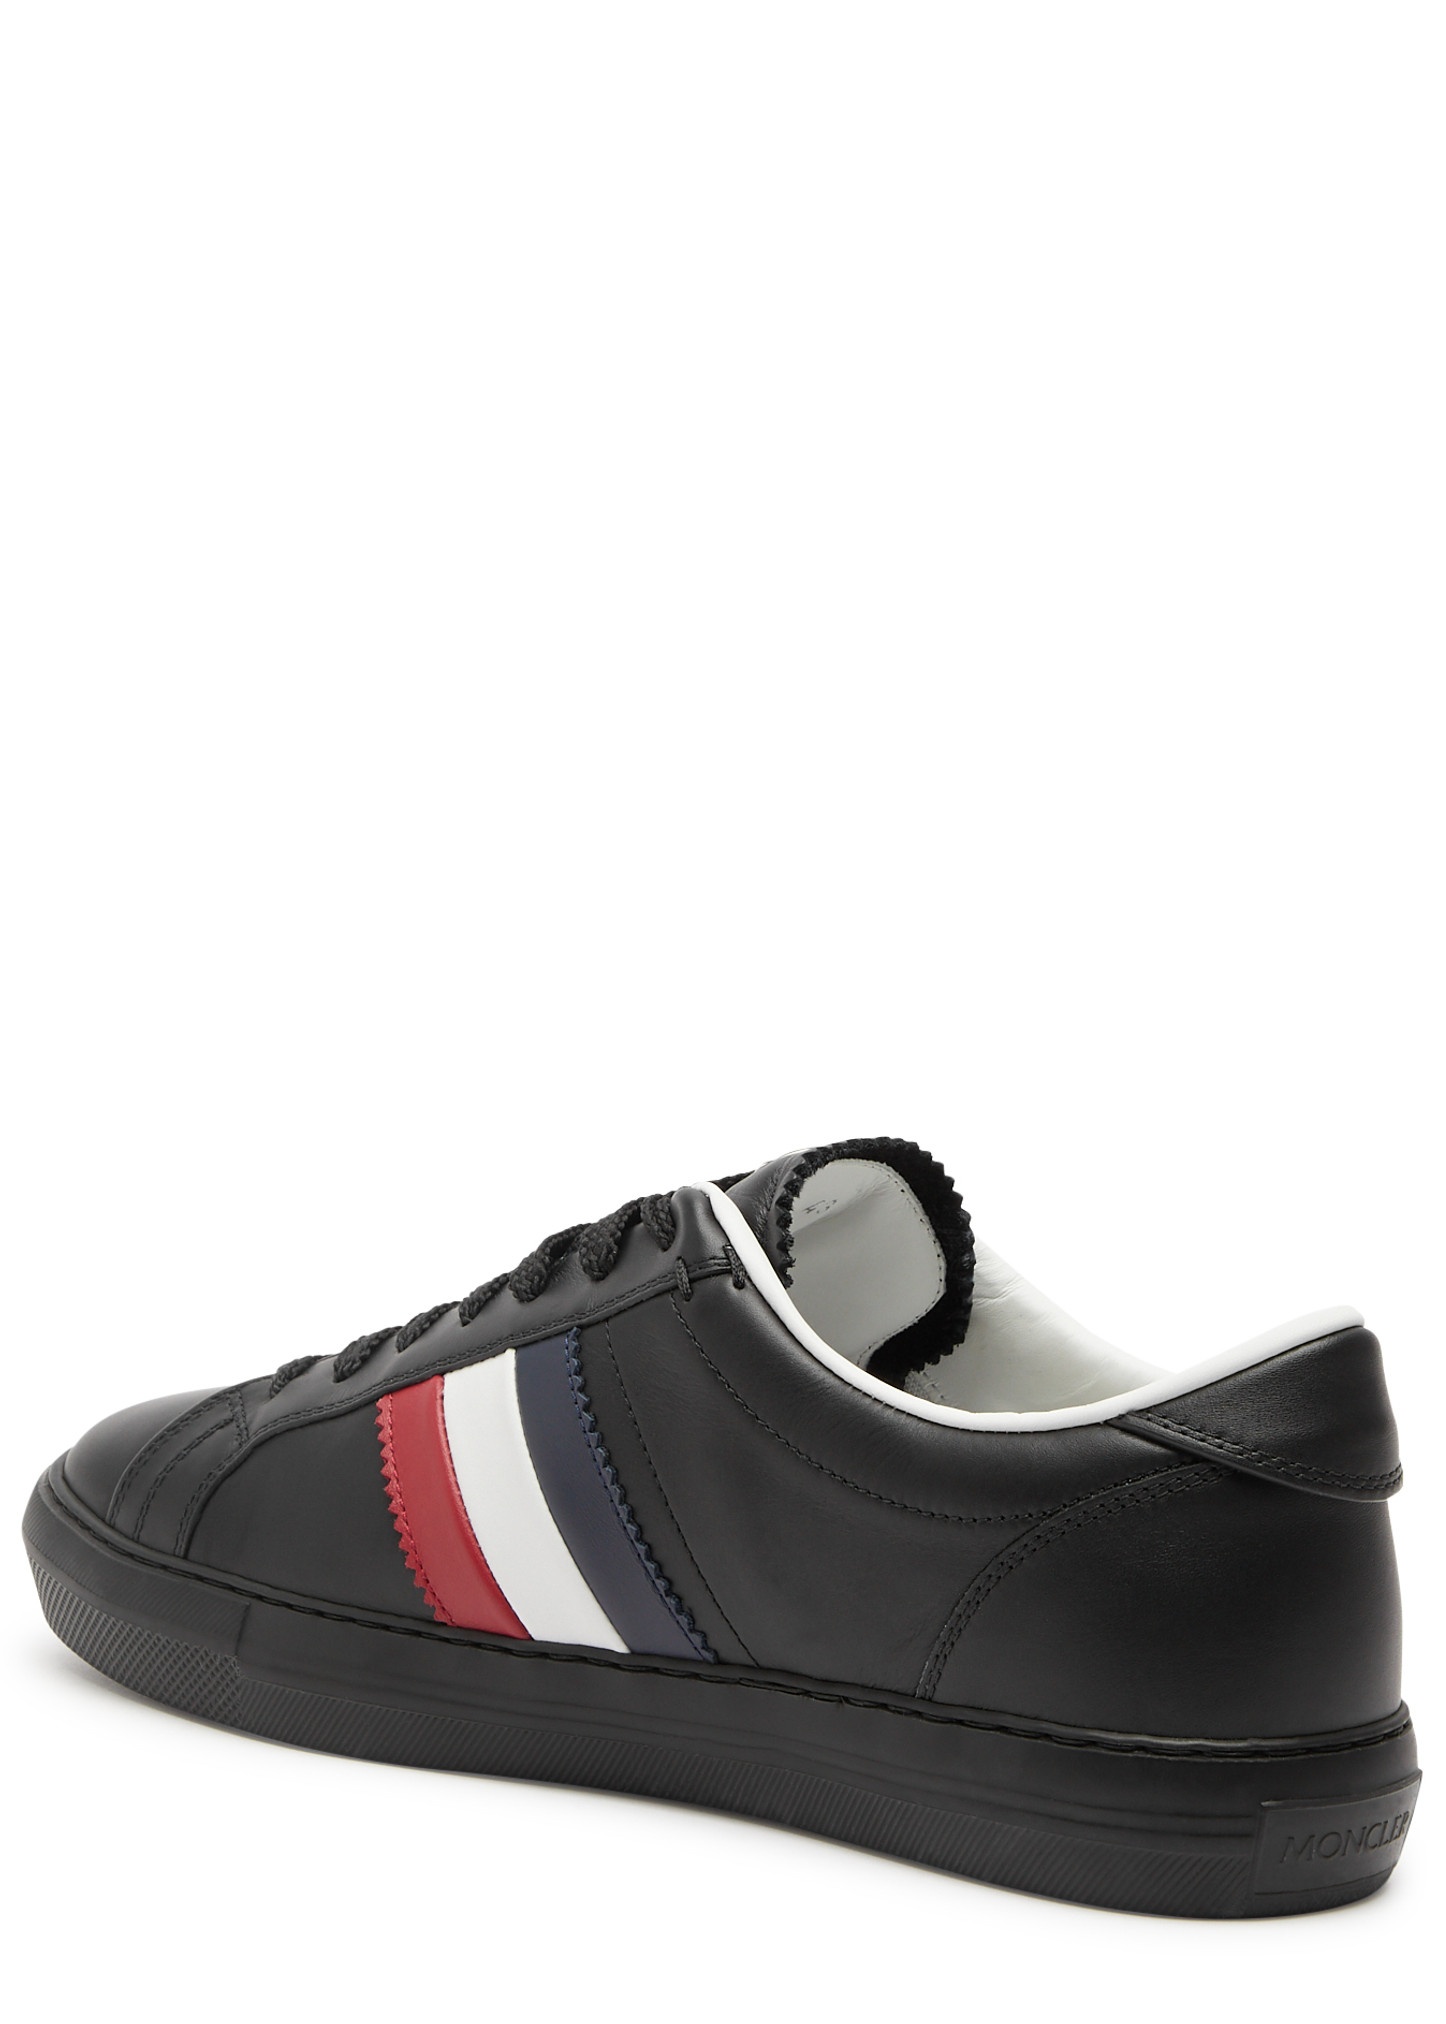 New Monaco leather sneakers - 2